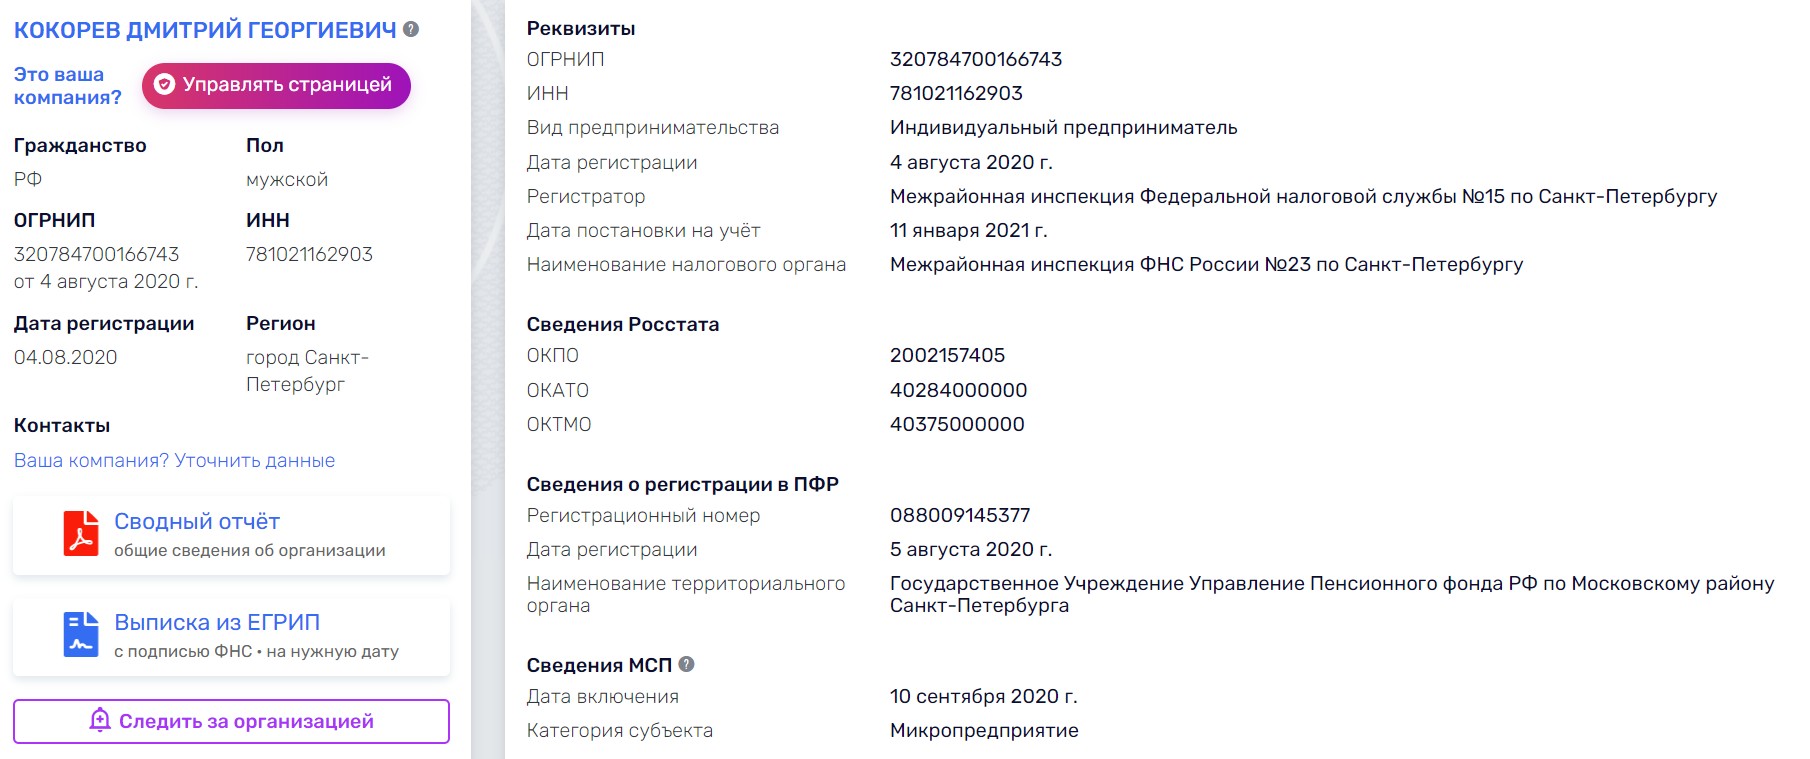 Дмитрий Кокорев реестр